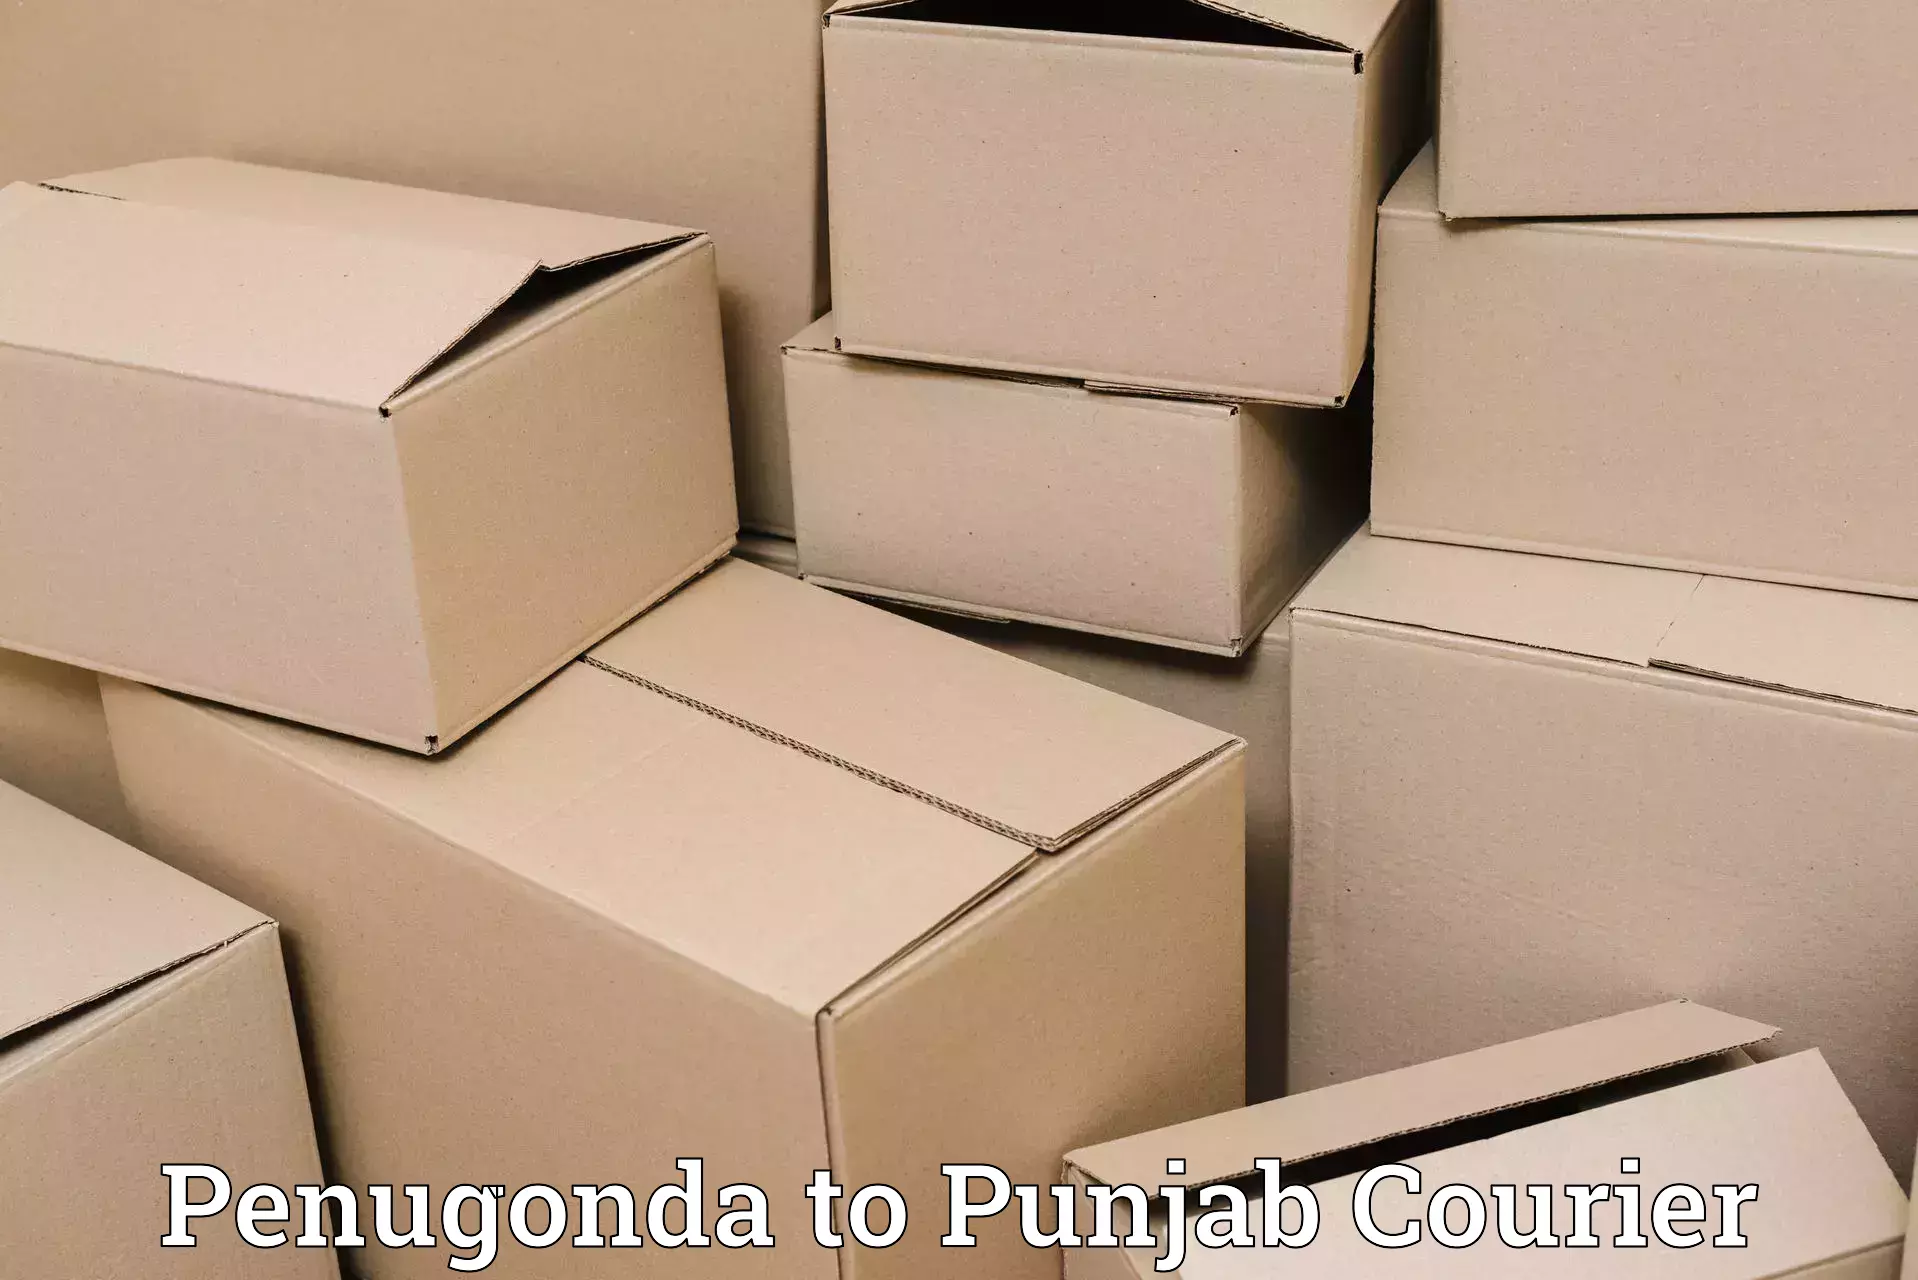 Express delivery capabilities Penugonda to Dinanagar